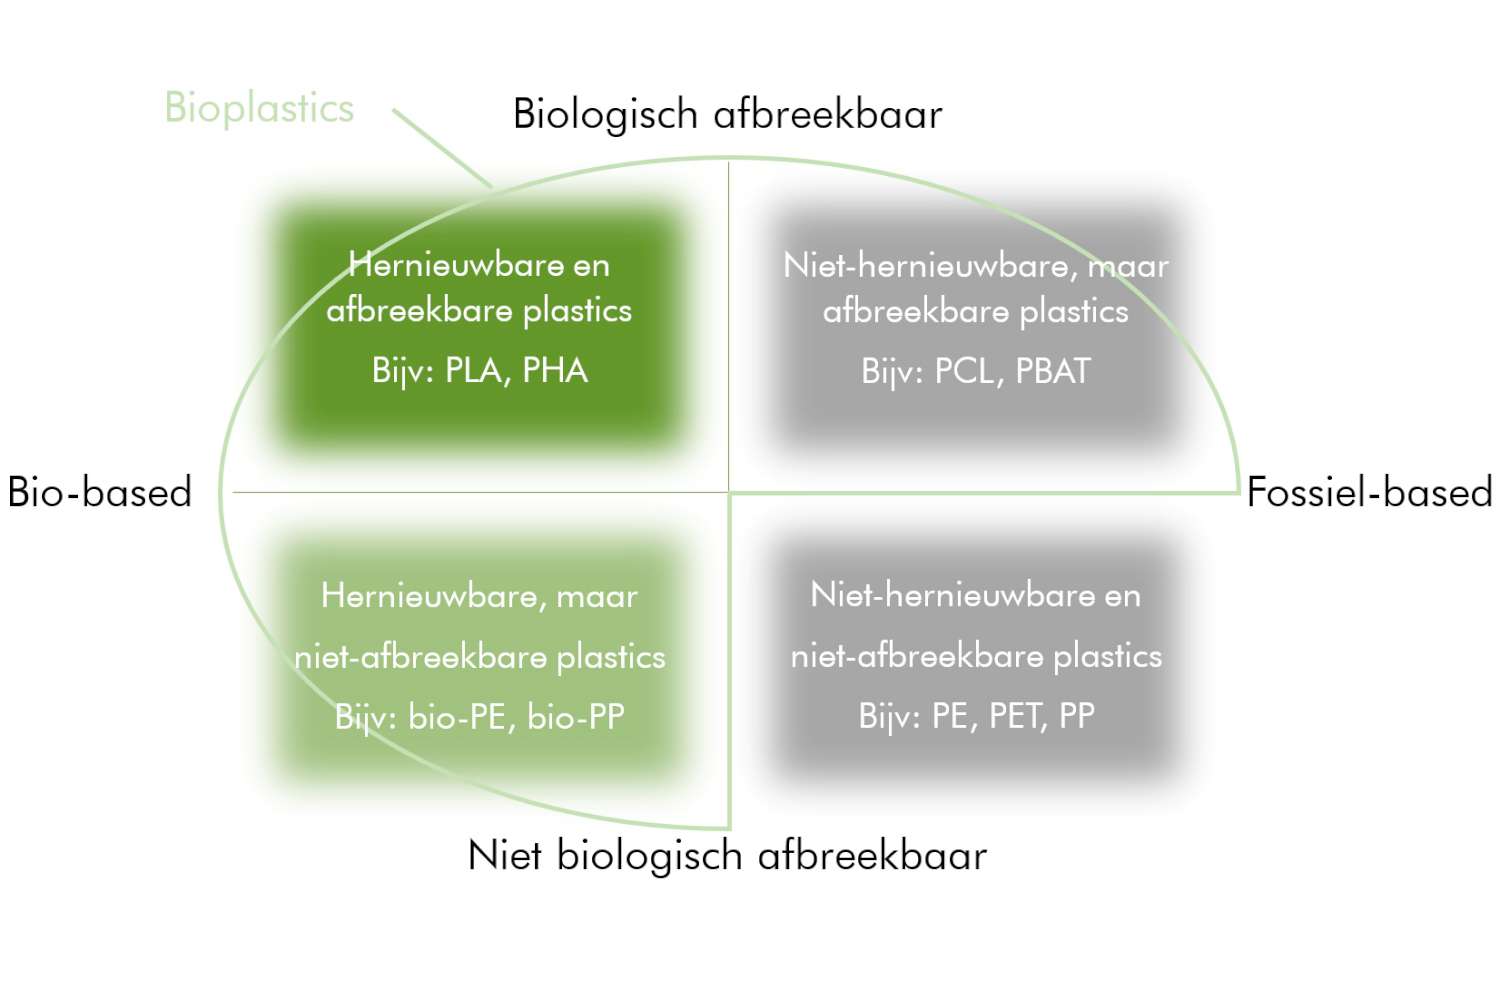 Een omschrijving van biobased versus fossiel-based plastic